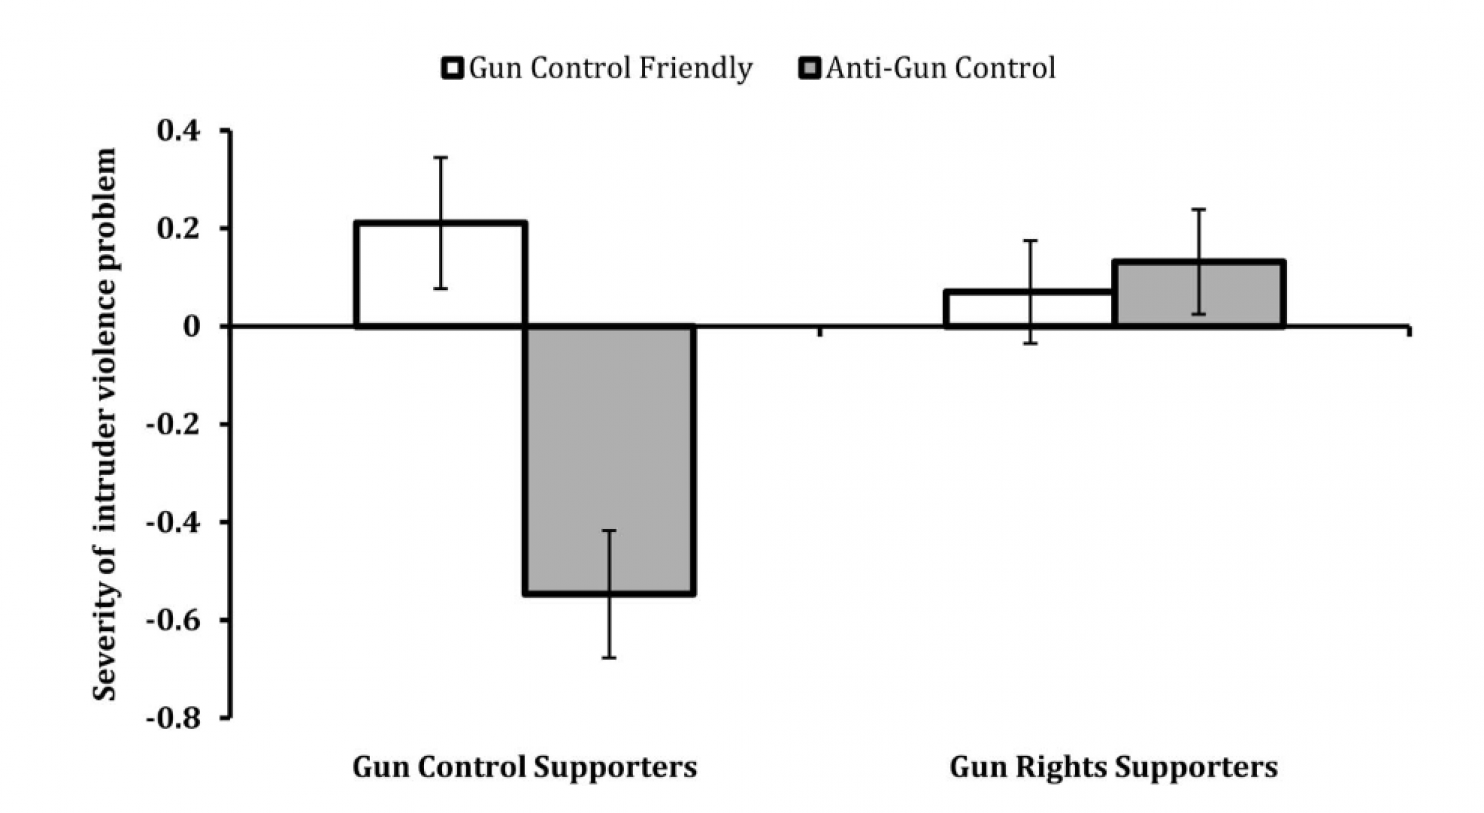 另一個關於槍支管制議題的實驗證明，「厭惡解決方案」的心態是不分政治傾向皆有可能發生的。圖中可以明顯看出支持槍支管制的一方在閱讀兩種方案後，認同程度產生了極大變化。